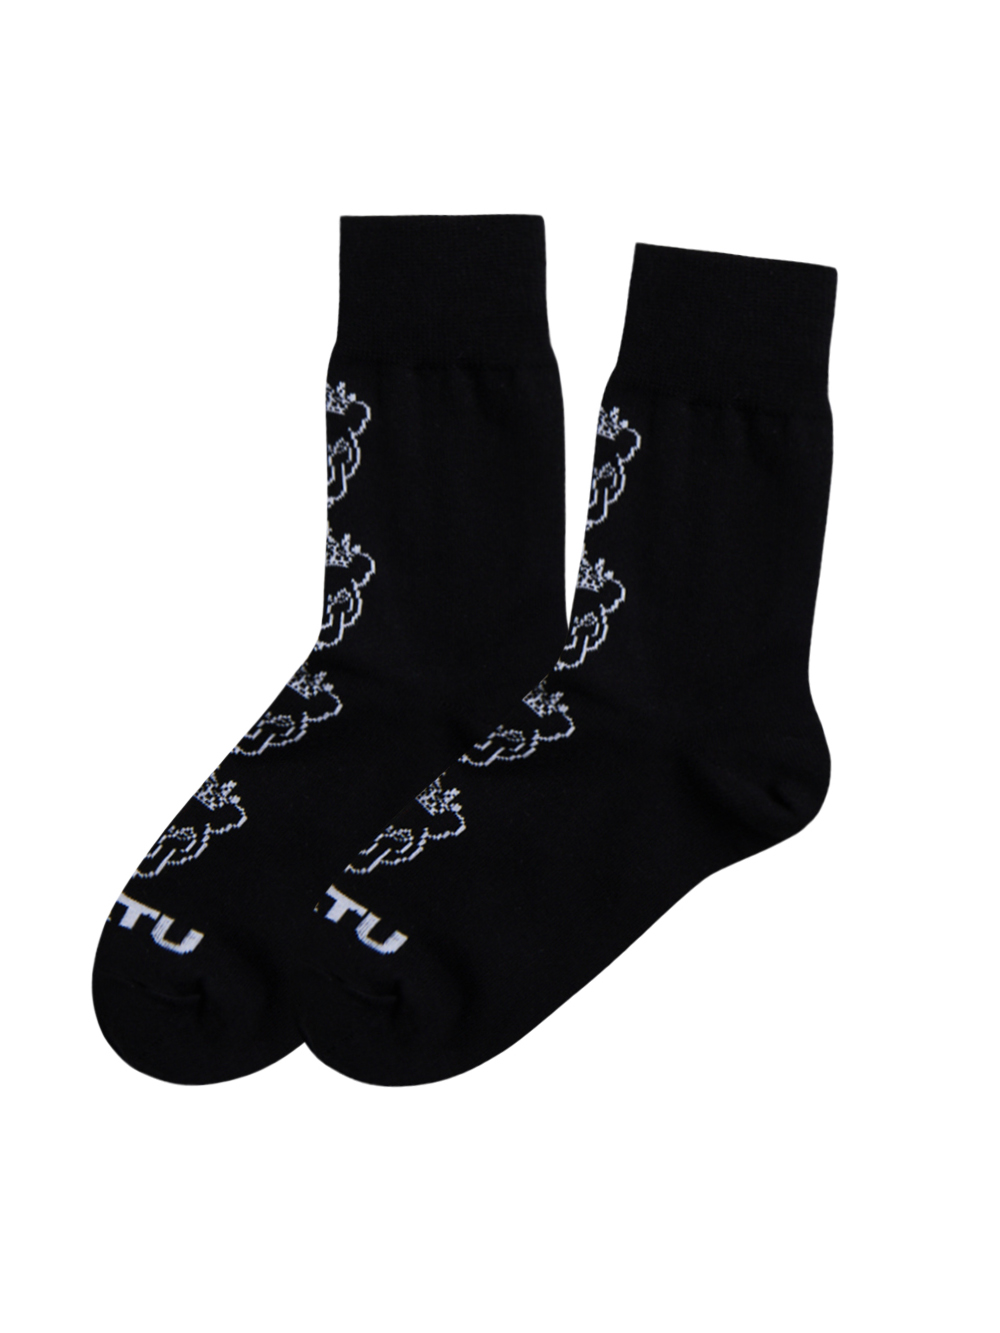 UTAA Crown Panther Socks : Black  (UC0GSF146BK)